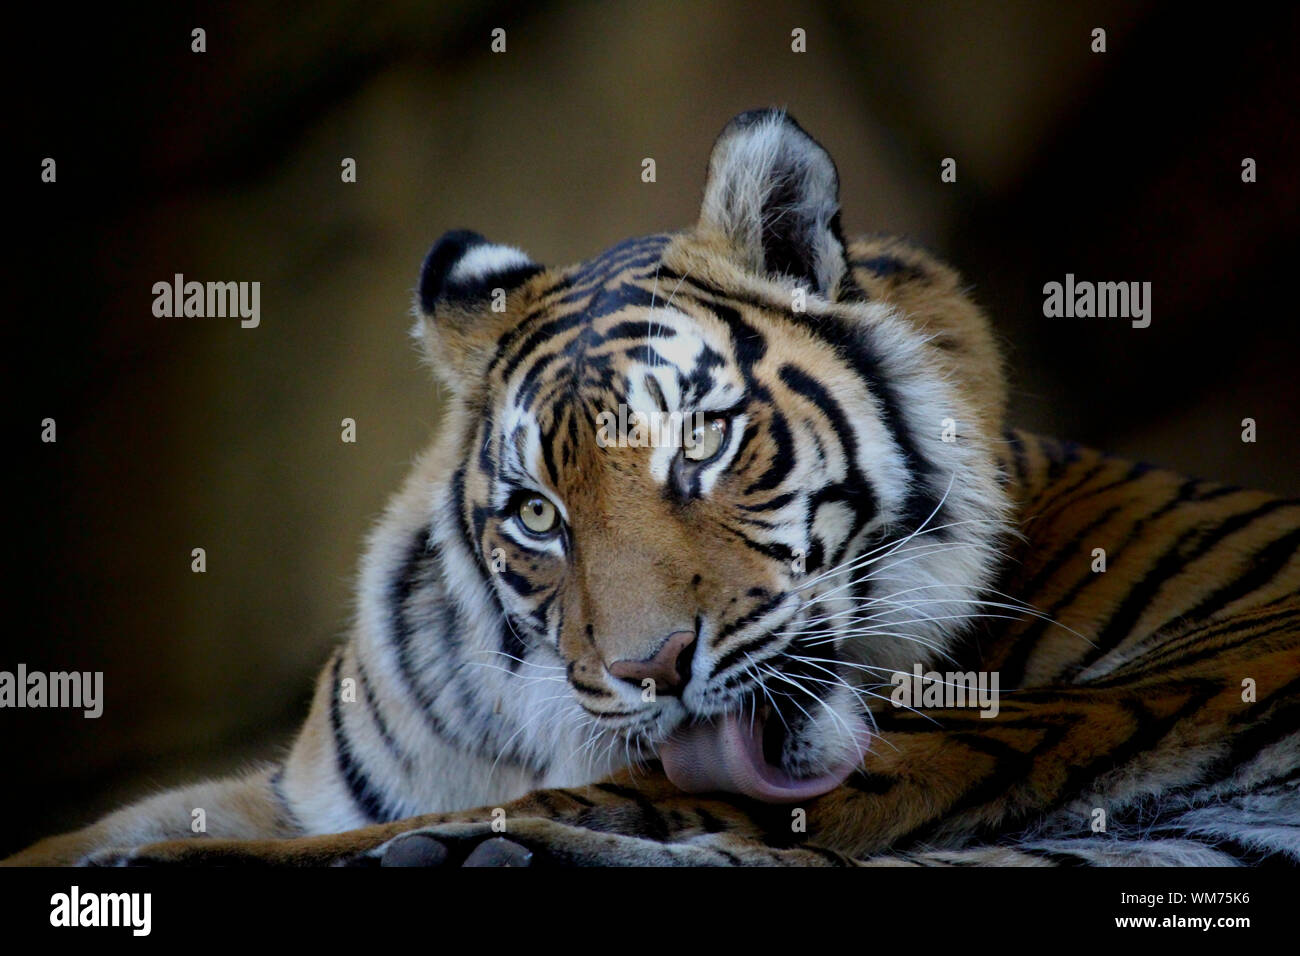 Panthera tigris sondaica - tigre de l'Indonésie Banque D'Images